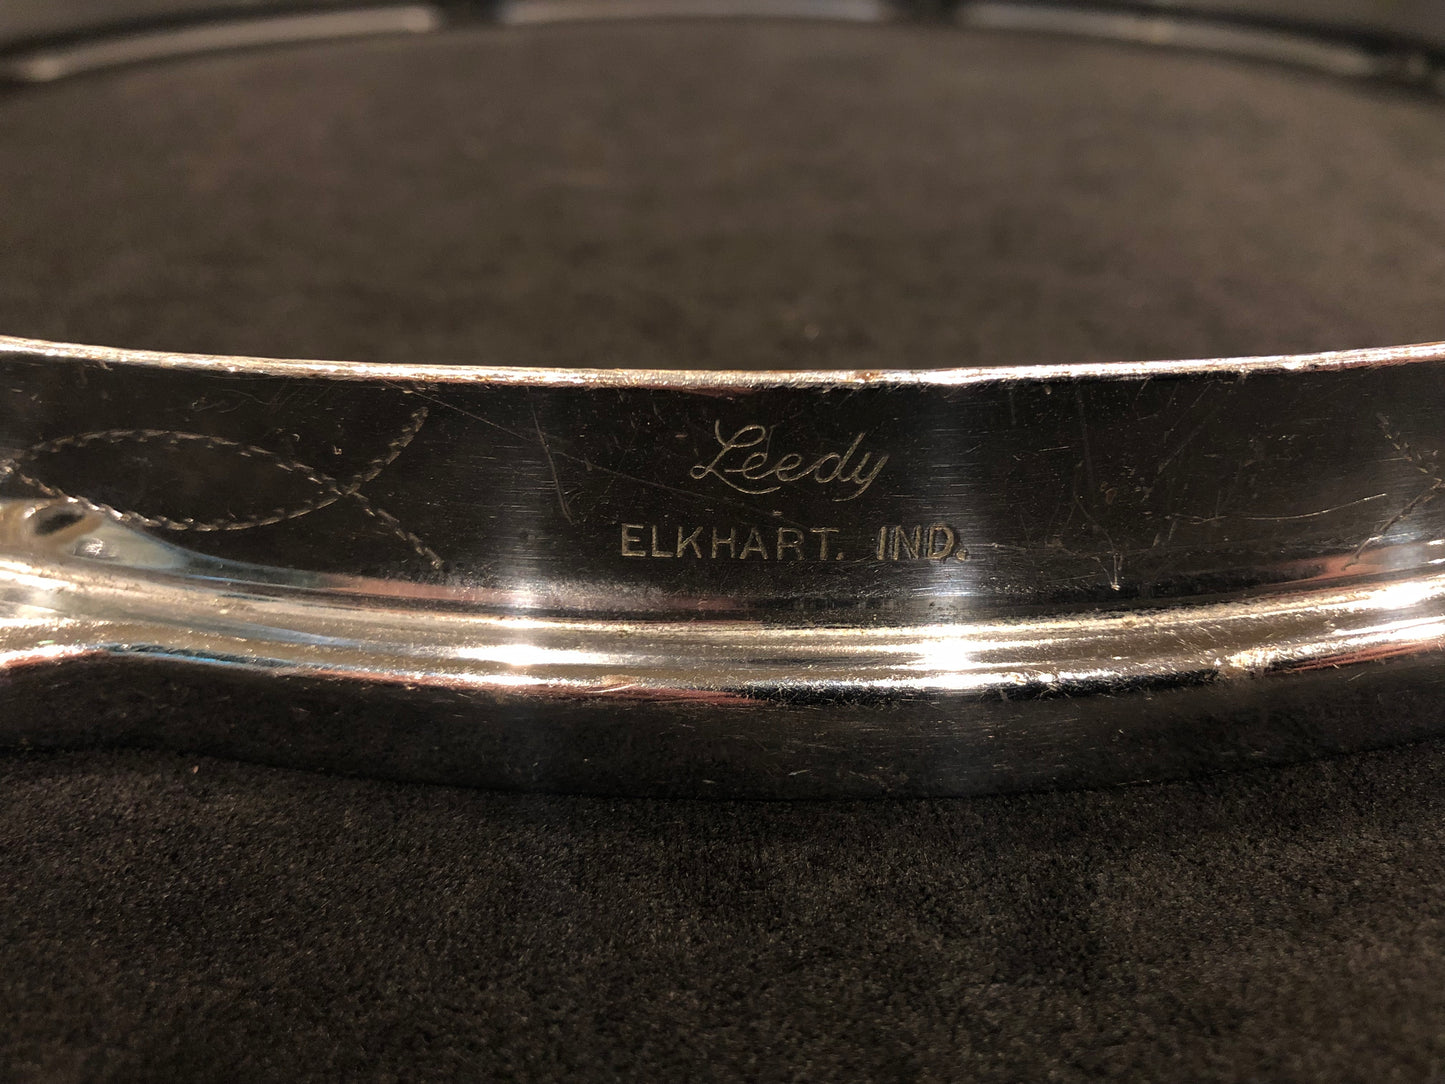 Vintage Leedy 14" Engraved Broadway Parallel Snare Drum Hoop 8-Lug Elkhart, IN